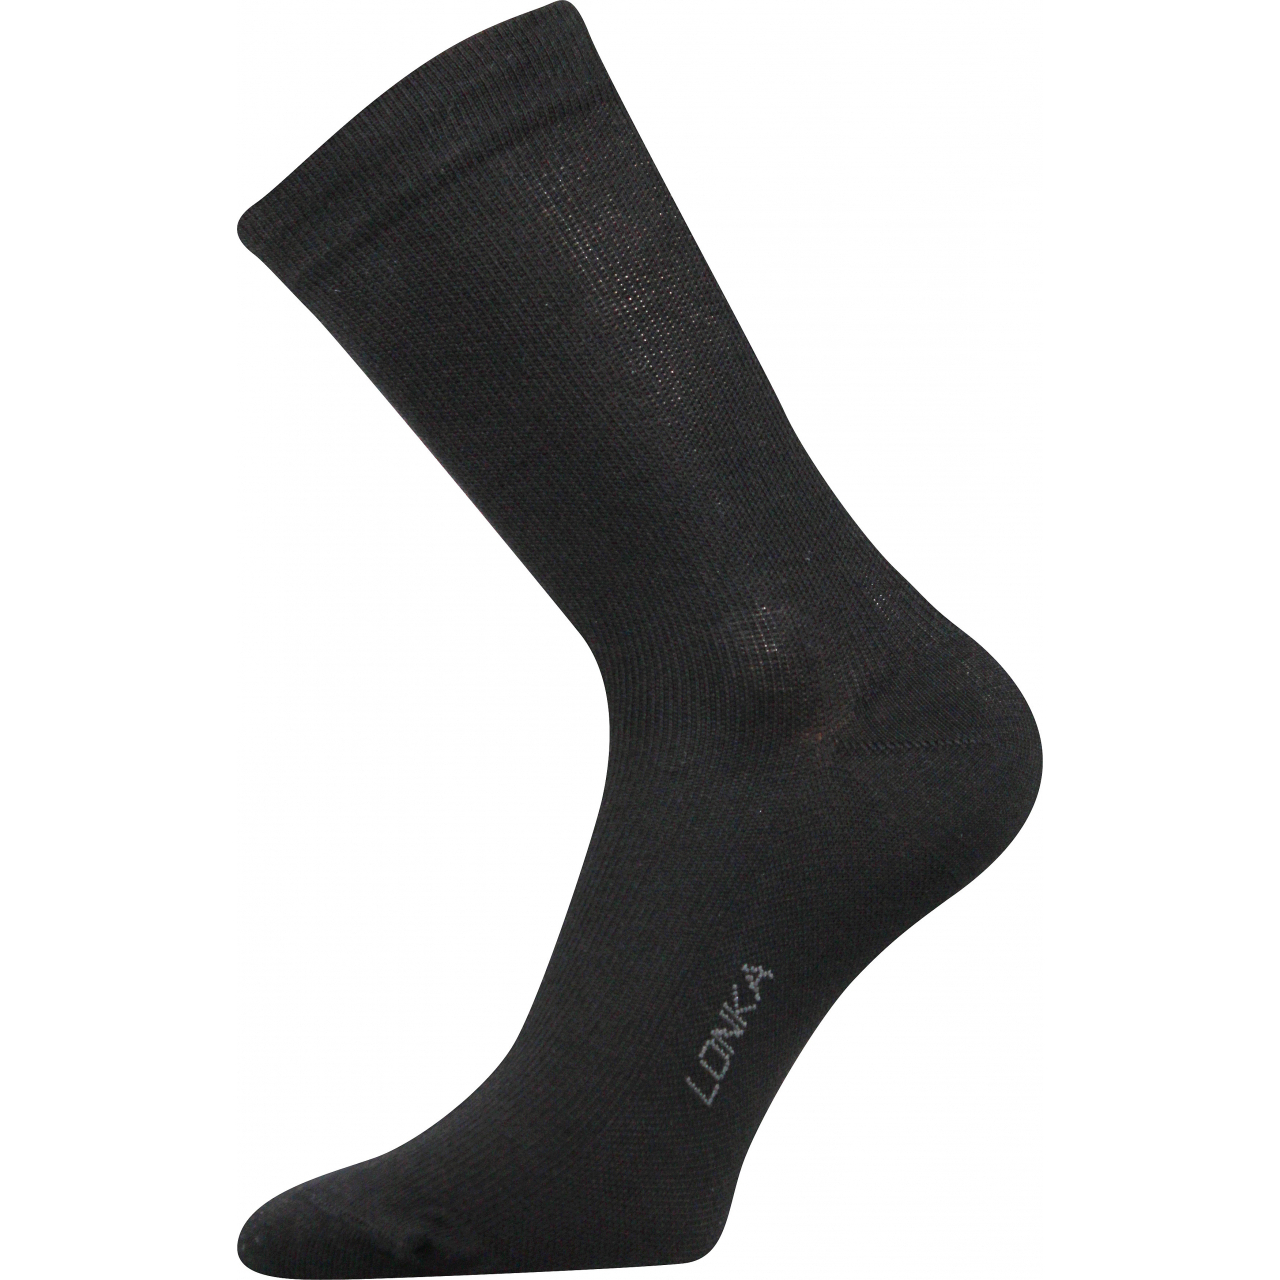 Ponožky kompresní Lonka Kooper - černé, 39-42